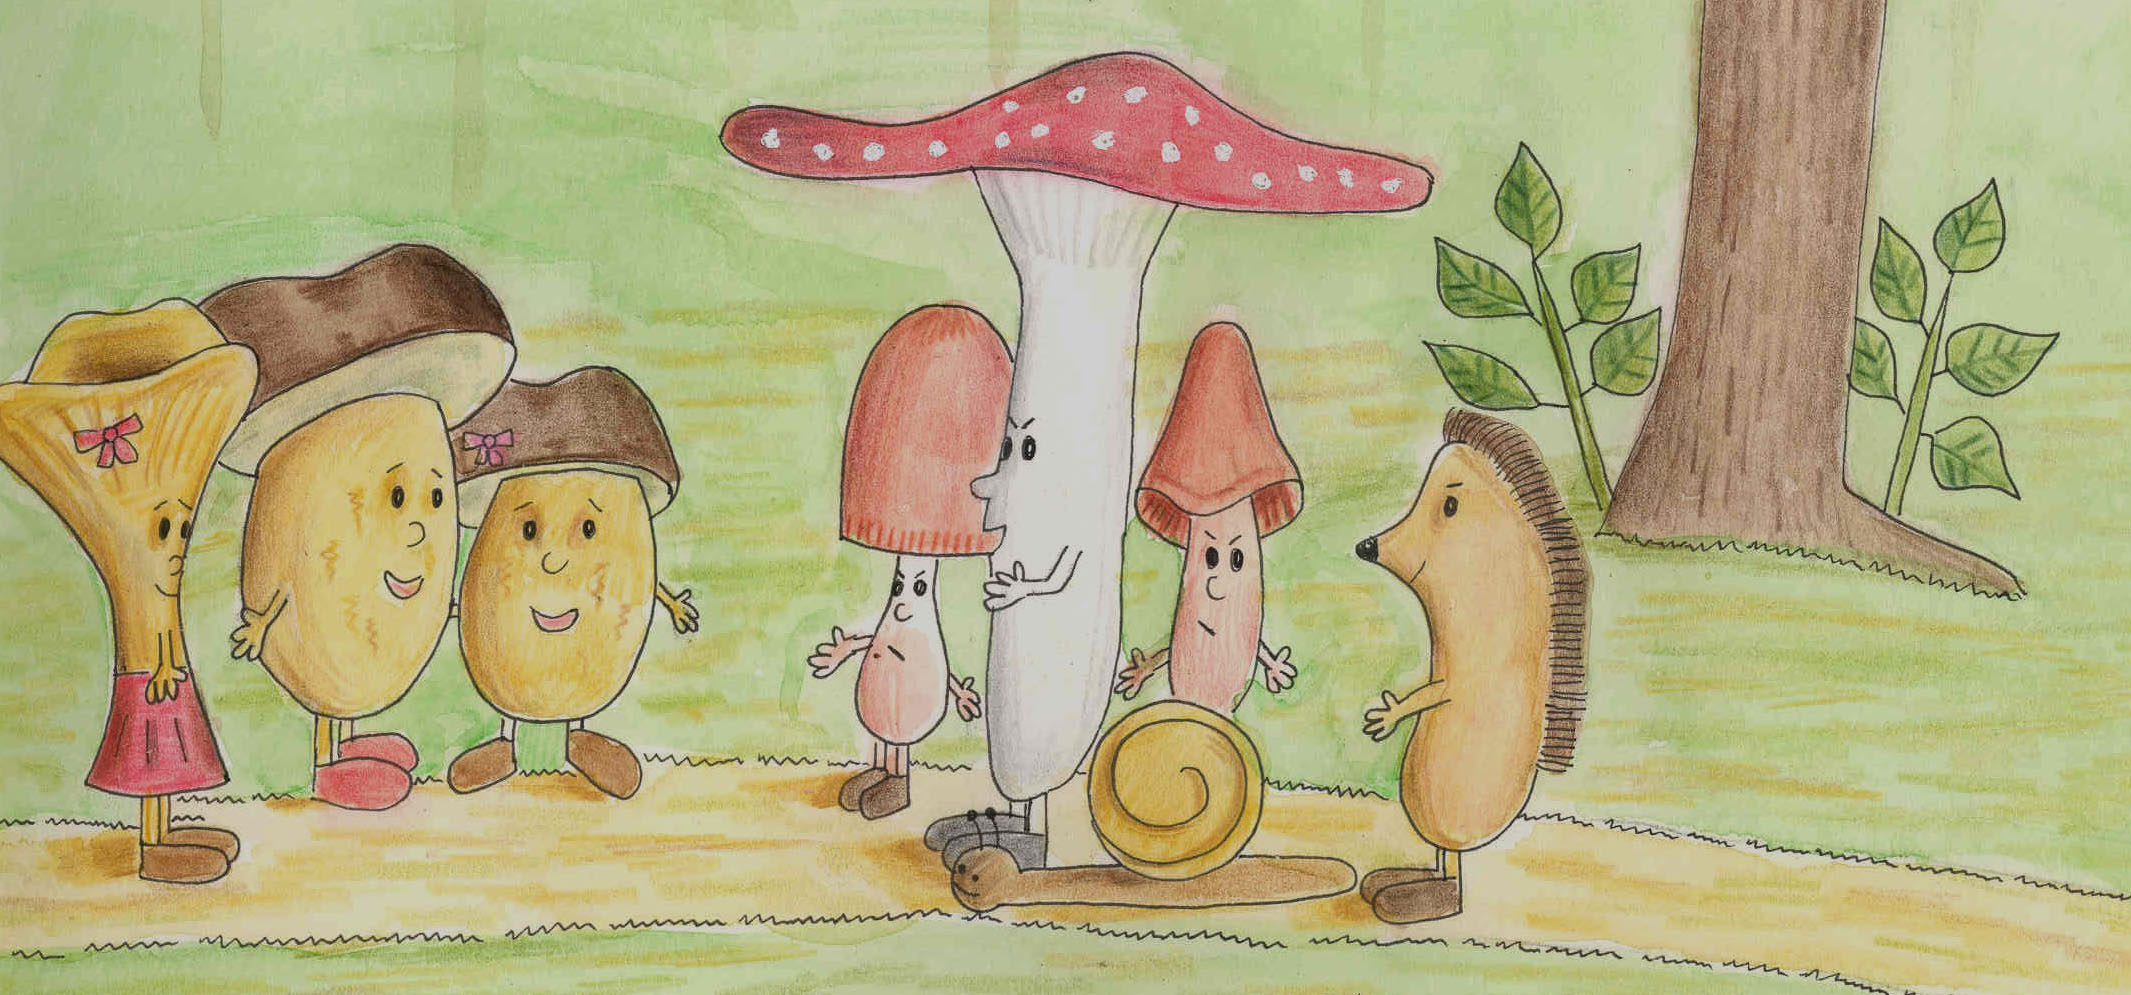 Titelbild des Buches Tobi der fliegende Pilz